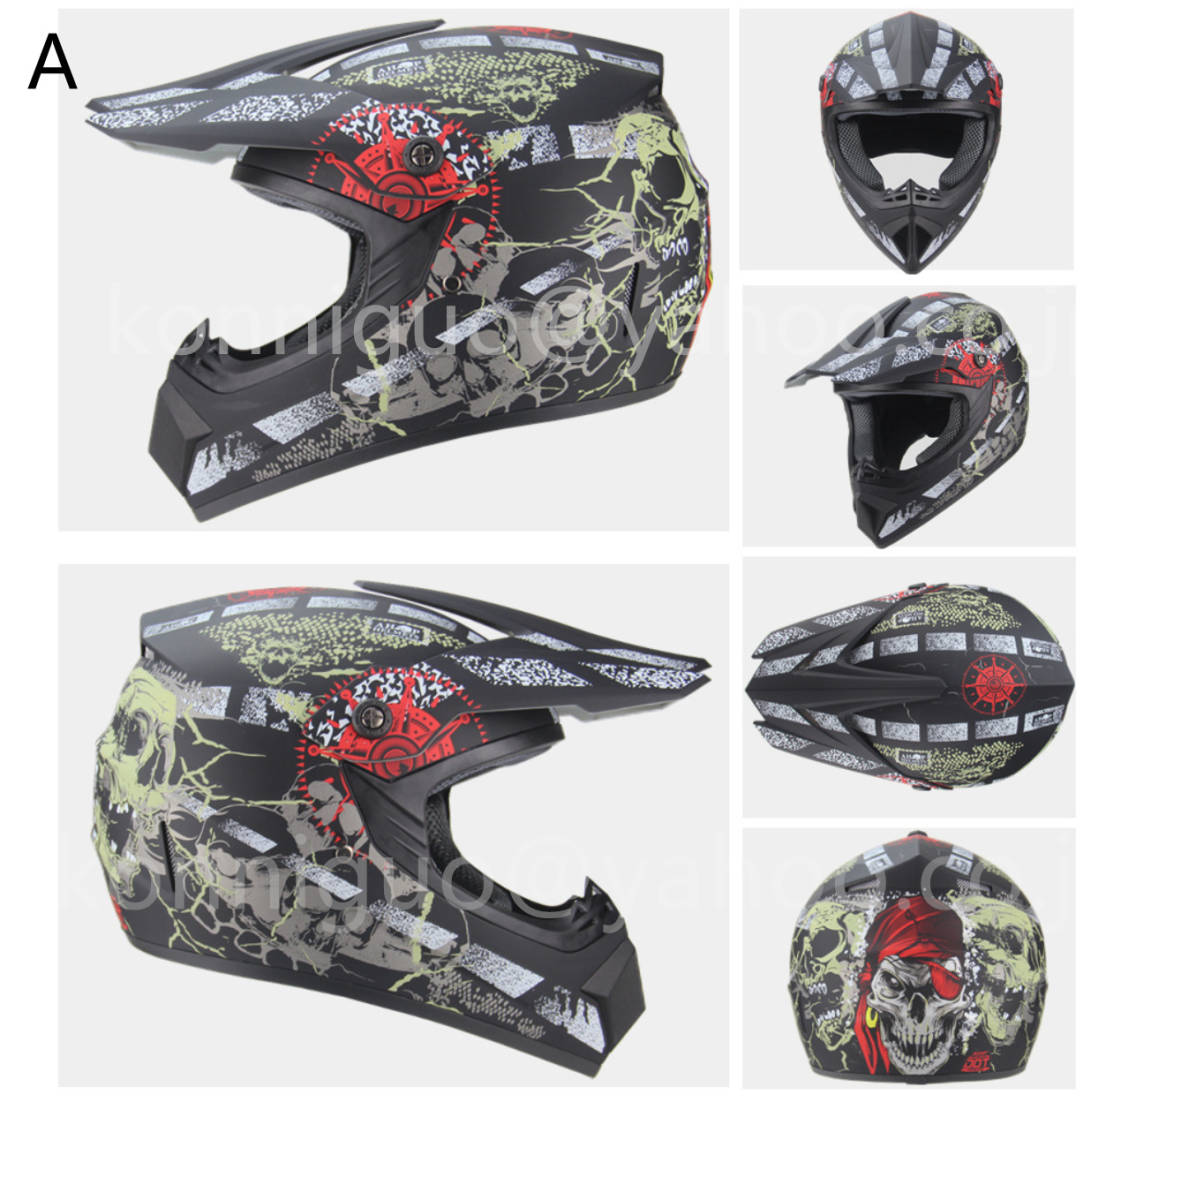  сильно рекомендация популярный товар DH off-road шлем AM горный велосипед full-face шлем безопасность защита шлем yy66